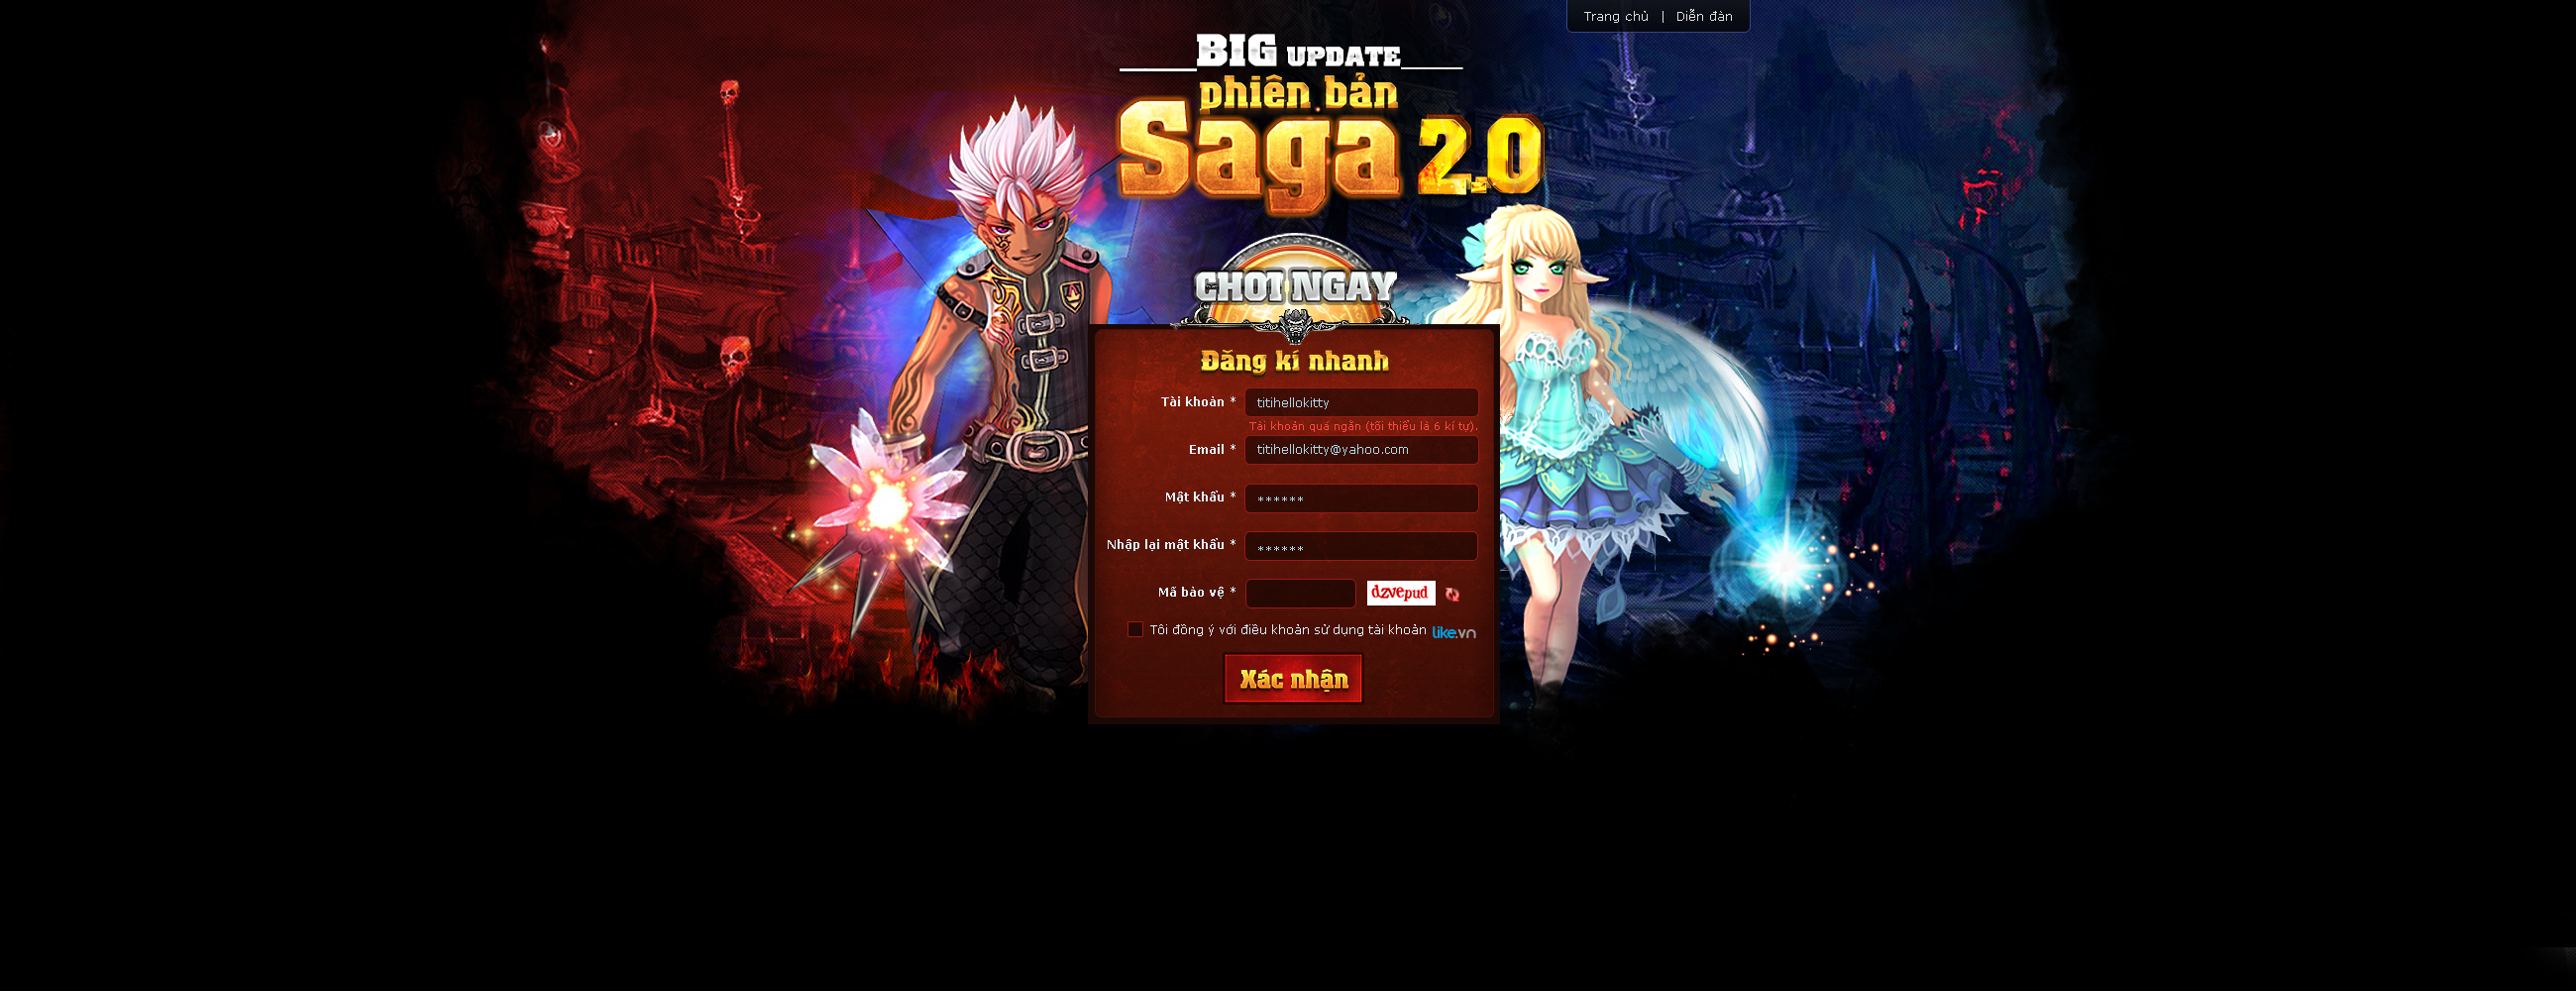 Game thủ Việt hồi hộp chờ ngày Saga 2.0 bùng nổ 1